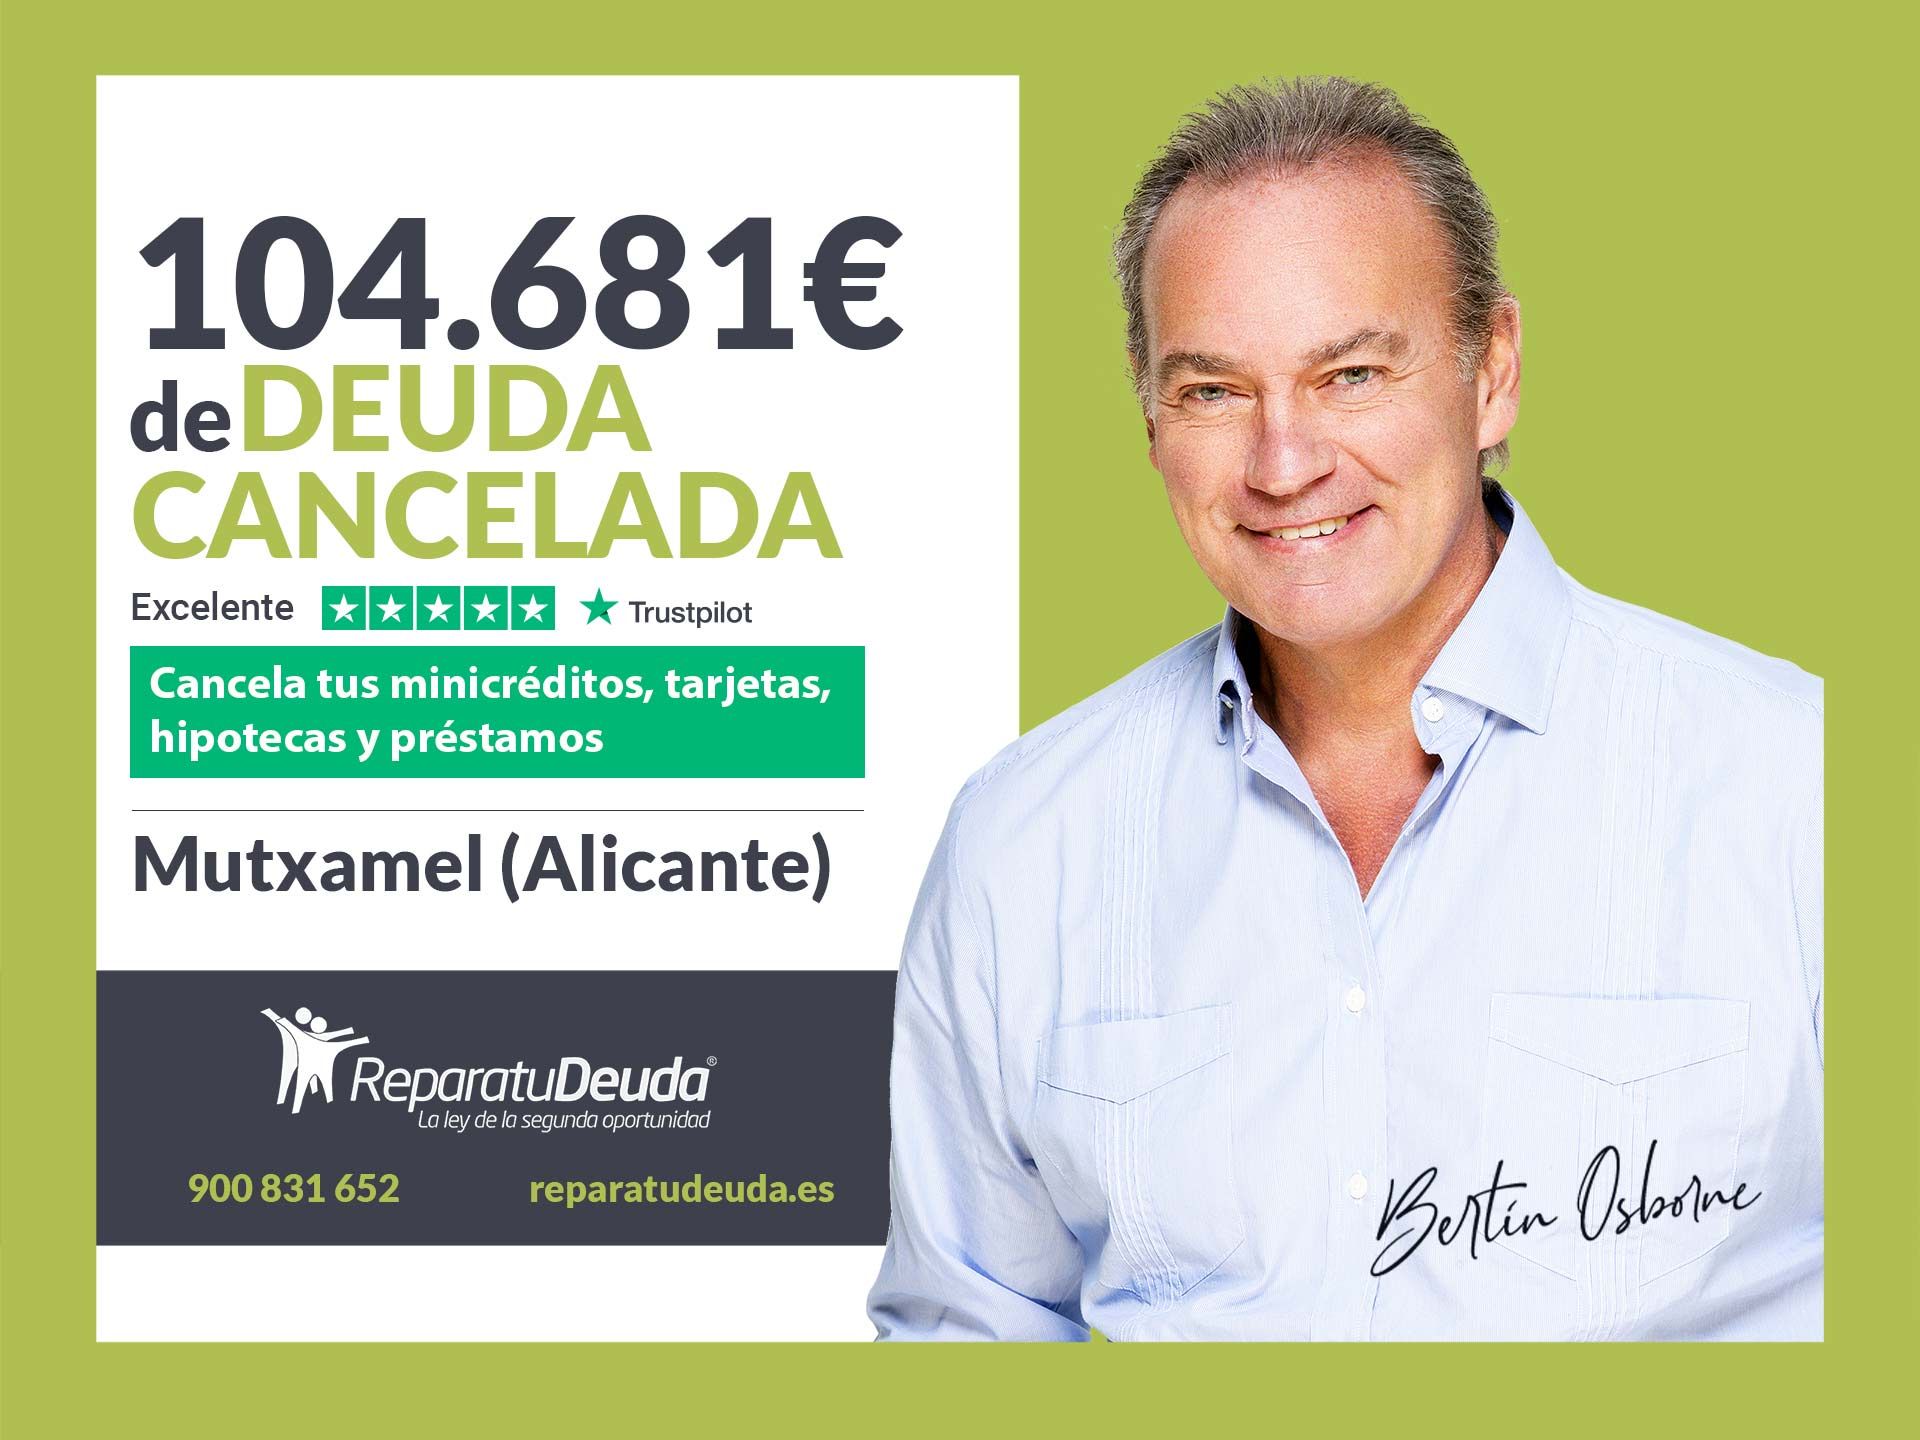 Repara tu Deuda cancela 104.681 euros en Mutxamel (Alicante) con la Ley de la Segunda Oportunidad